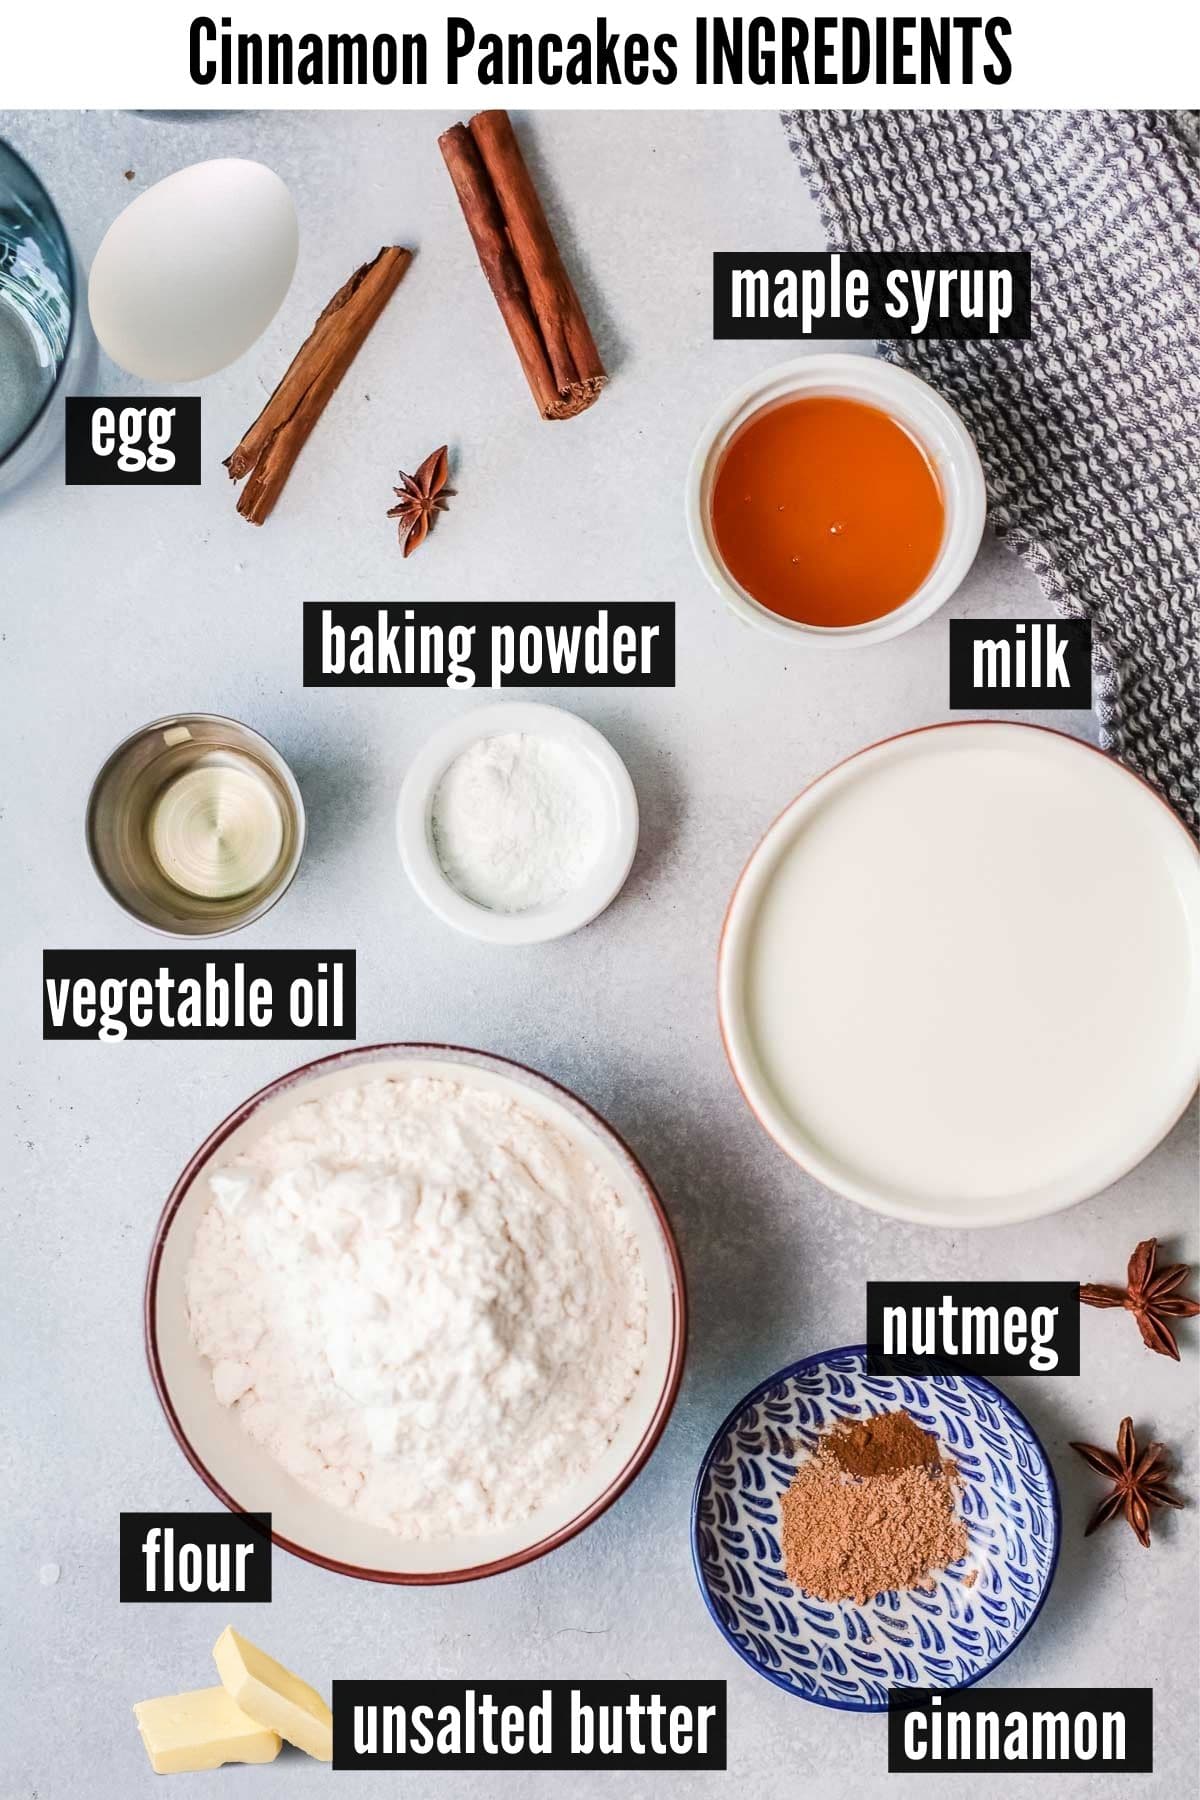 cinnamon pancakes ingredients